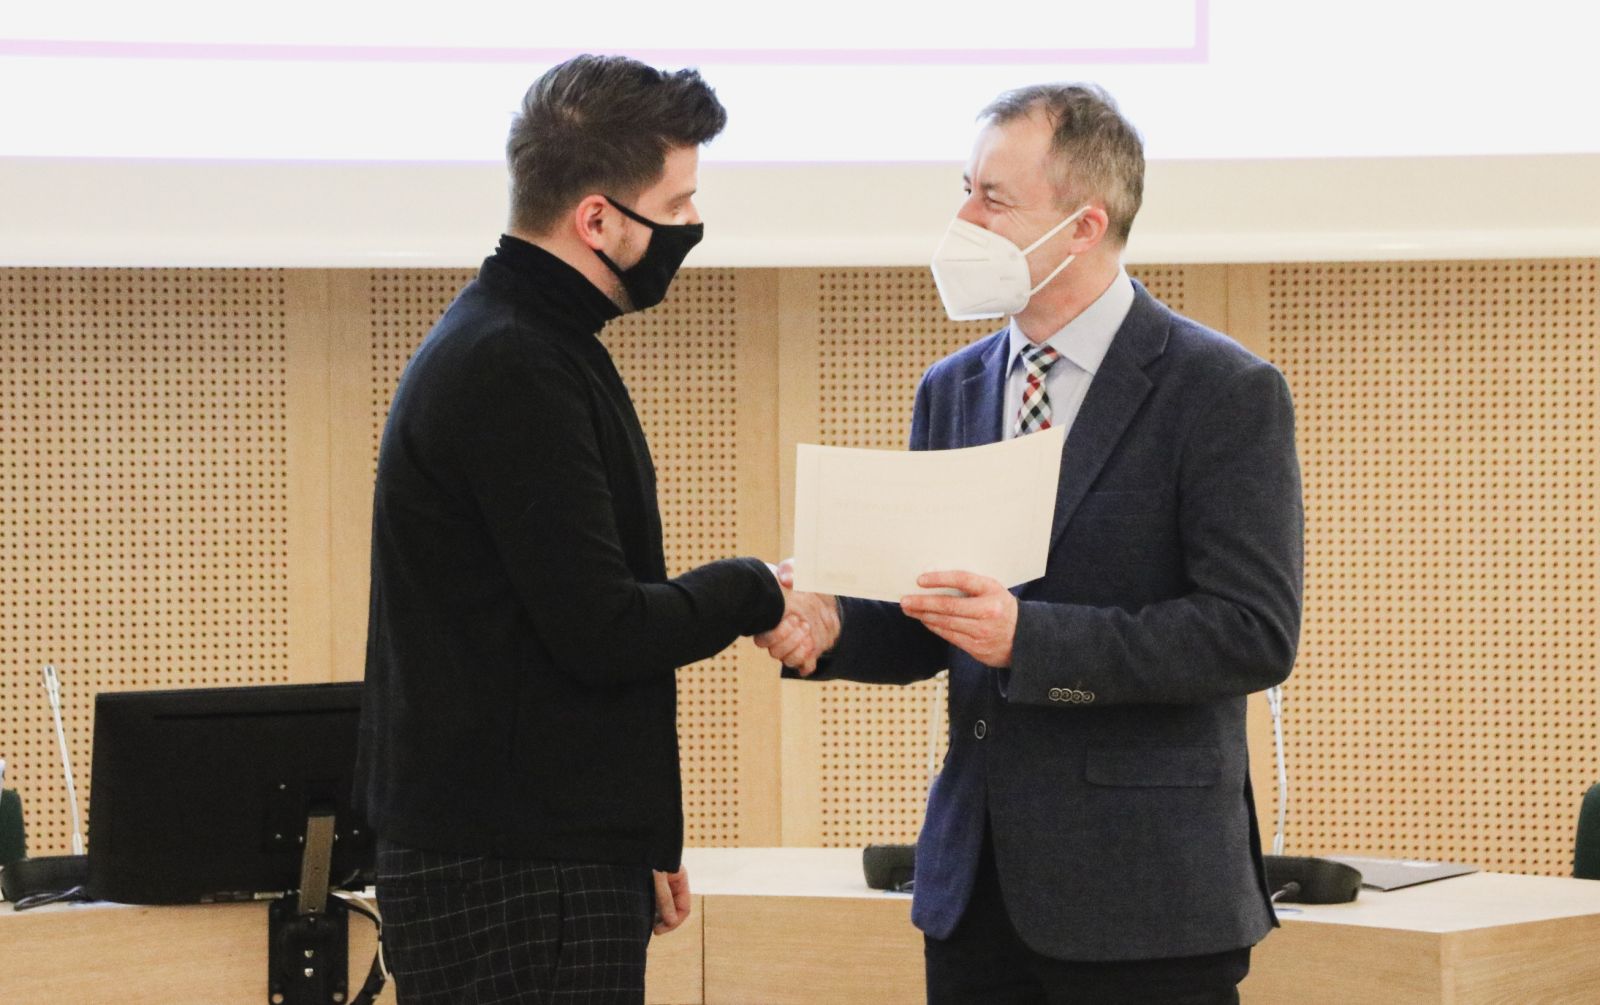 Dziekan WFPiK wręcza dyplom przedstawicielowi Działu Filmu Centrum Kultury Zamek.